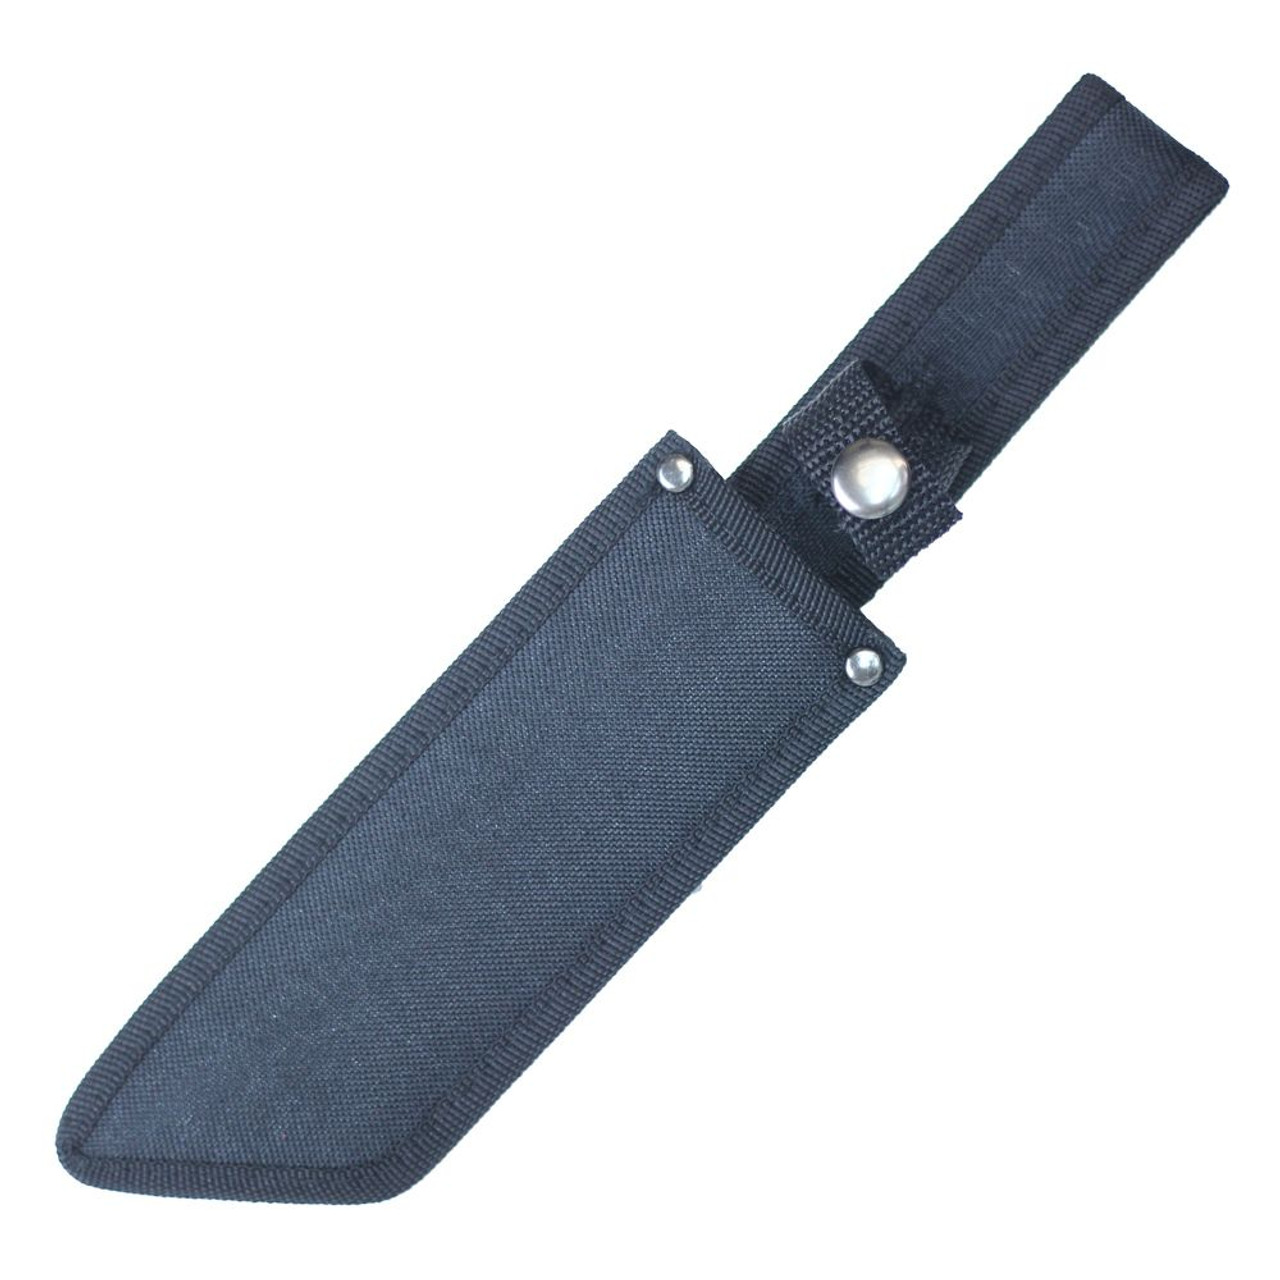 11" Fixed Blade Hunting Machete Knife w/ Sheath - Black